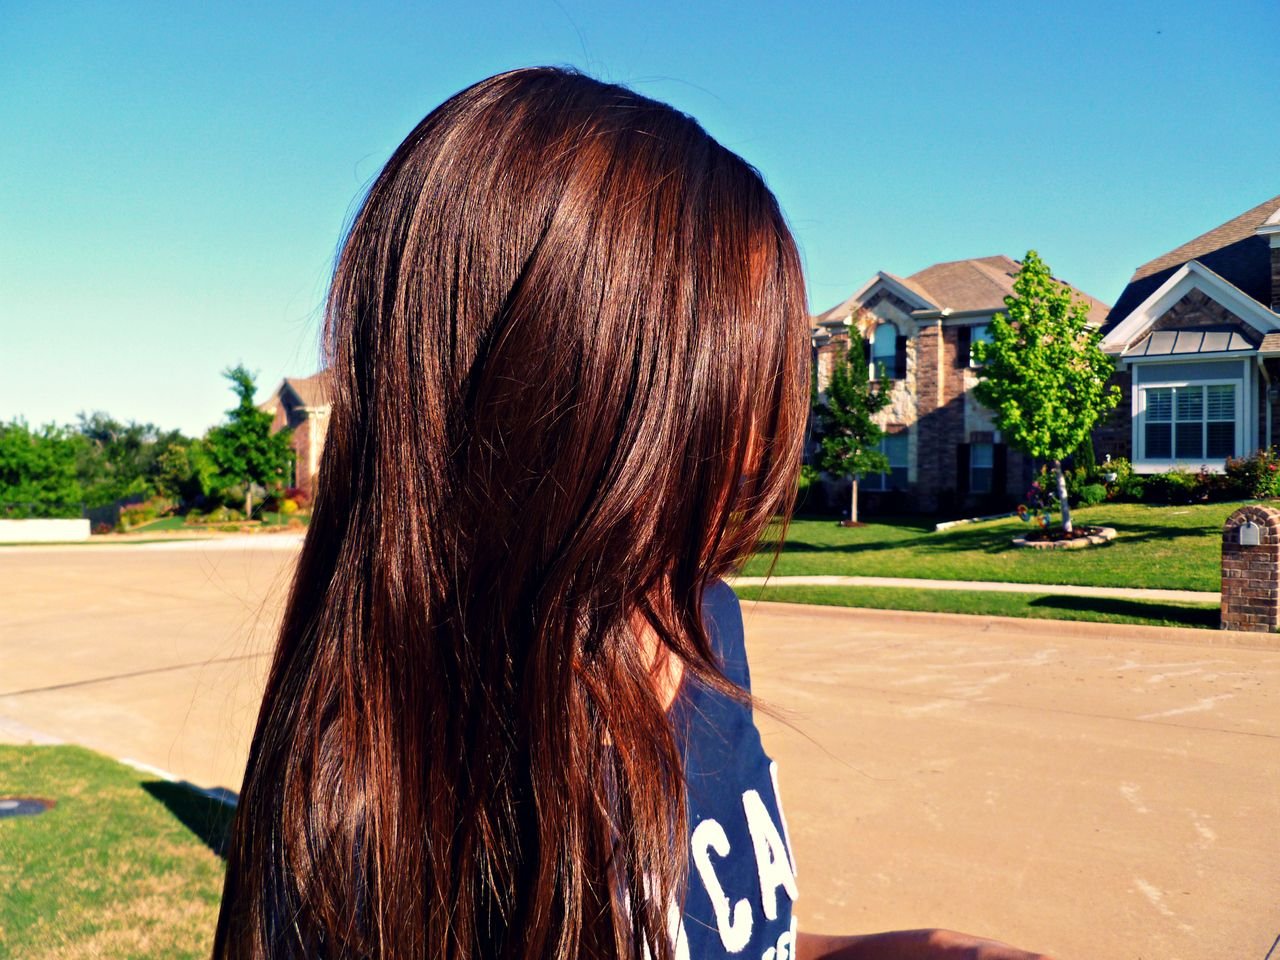 Каштановая девочка. Каштановые волосы. Шоколадный цвет волос. Длинные каштановые волосы. Девушки с каштановым цветом волос.